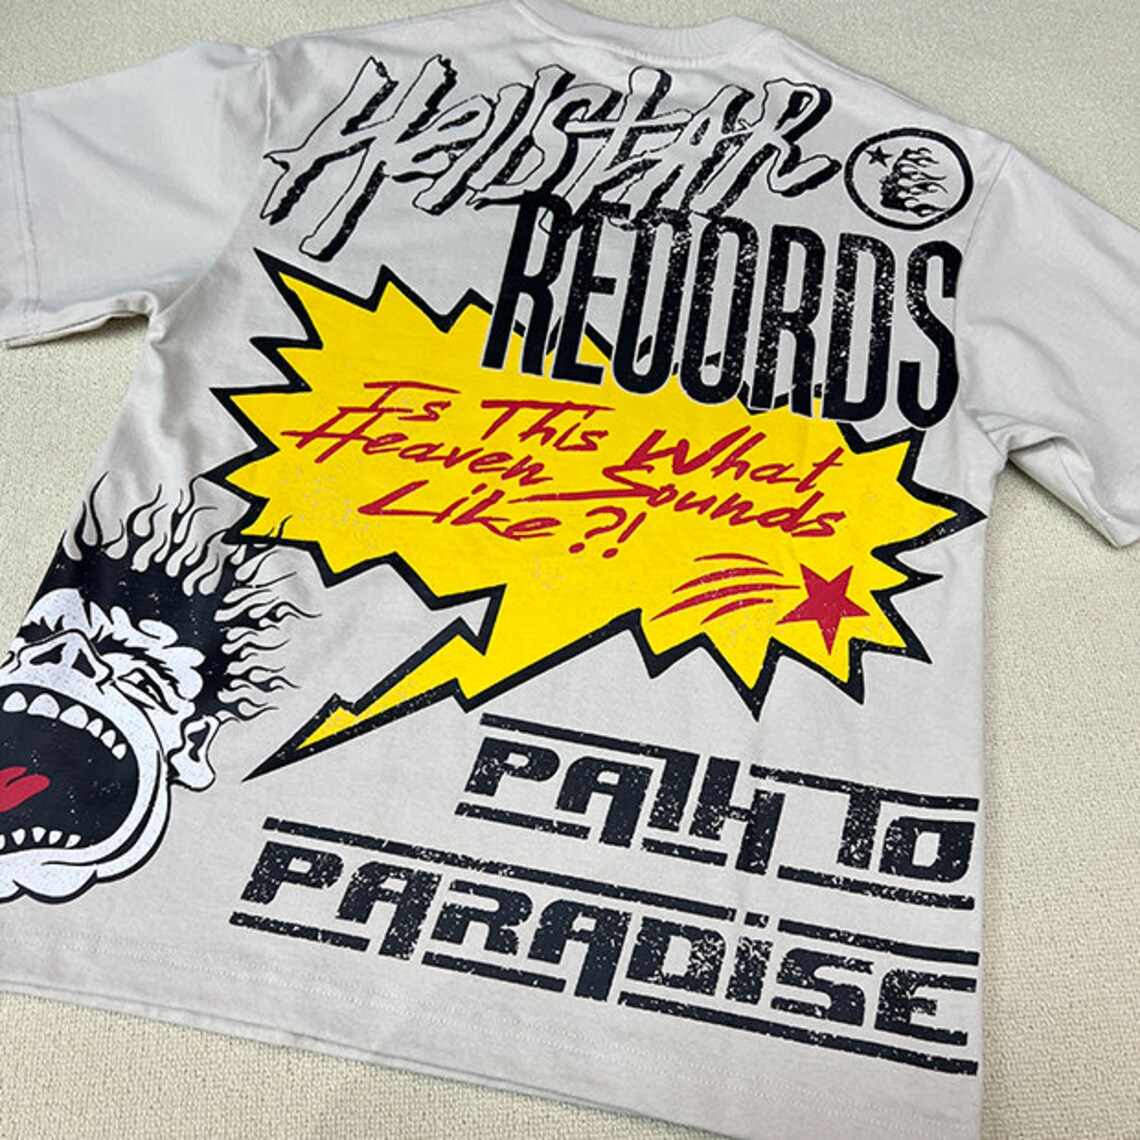 Hellstar Graphic T Shirt Etsy